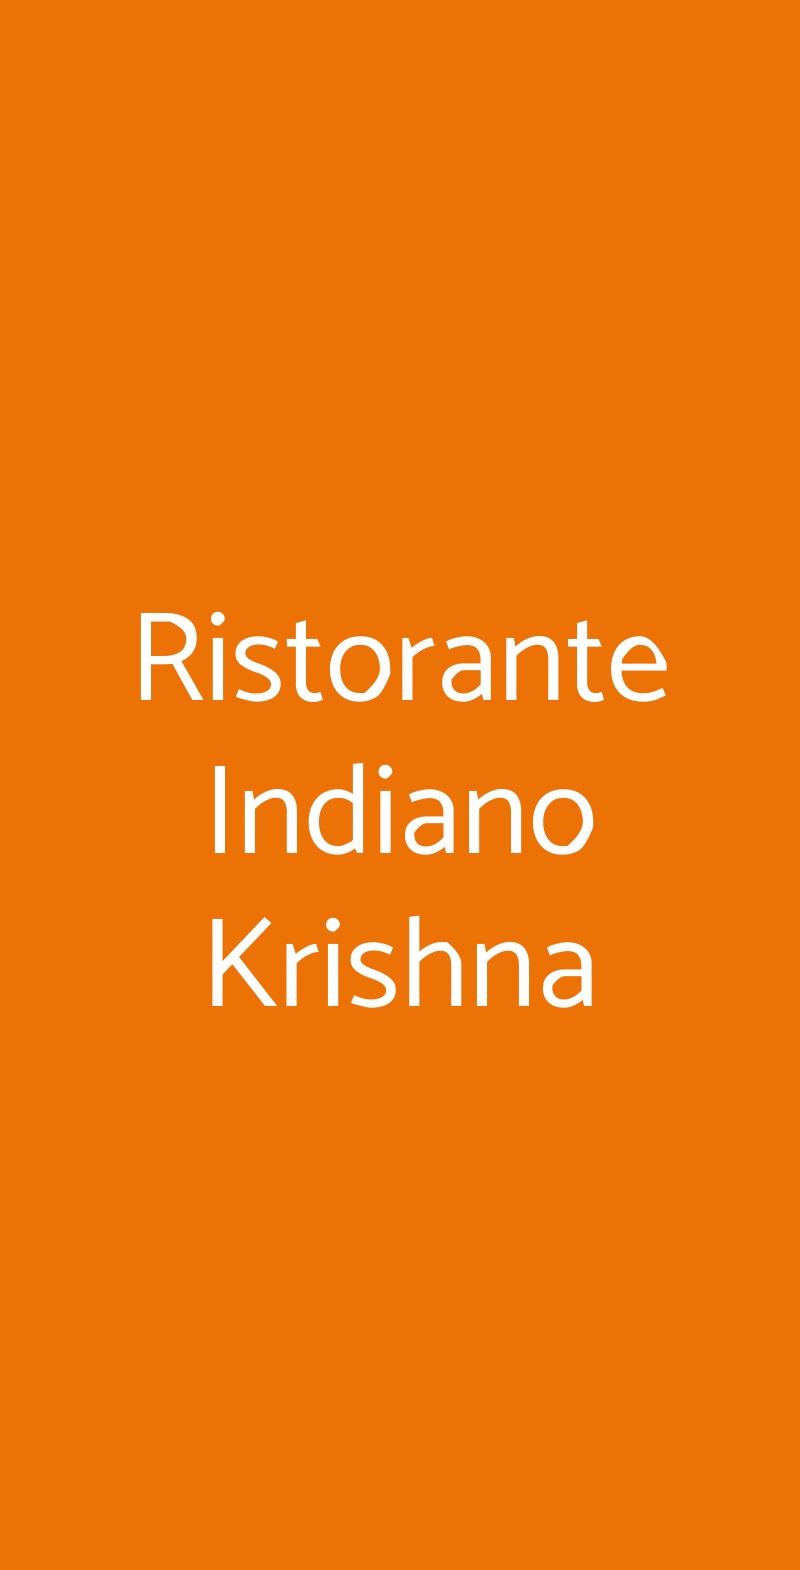 Ristorante Indiano Krishna Trieste menù 1 pagina